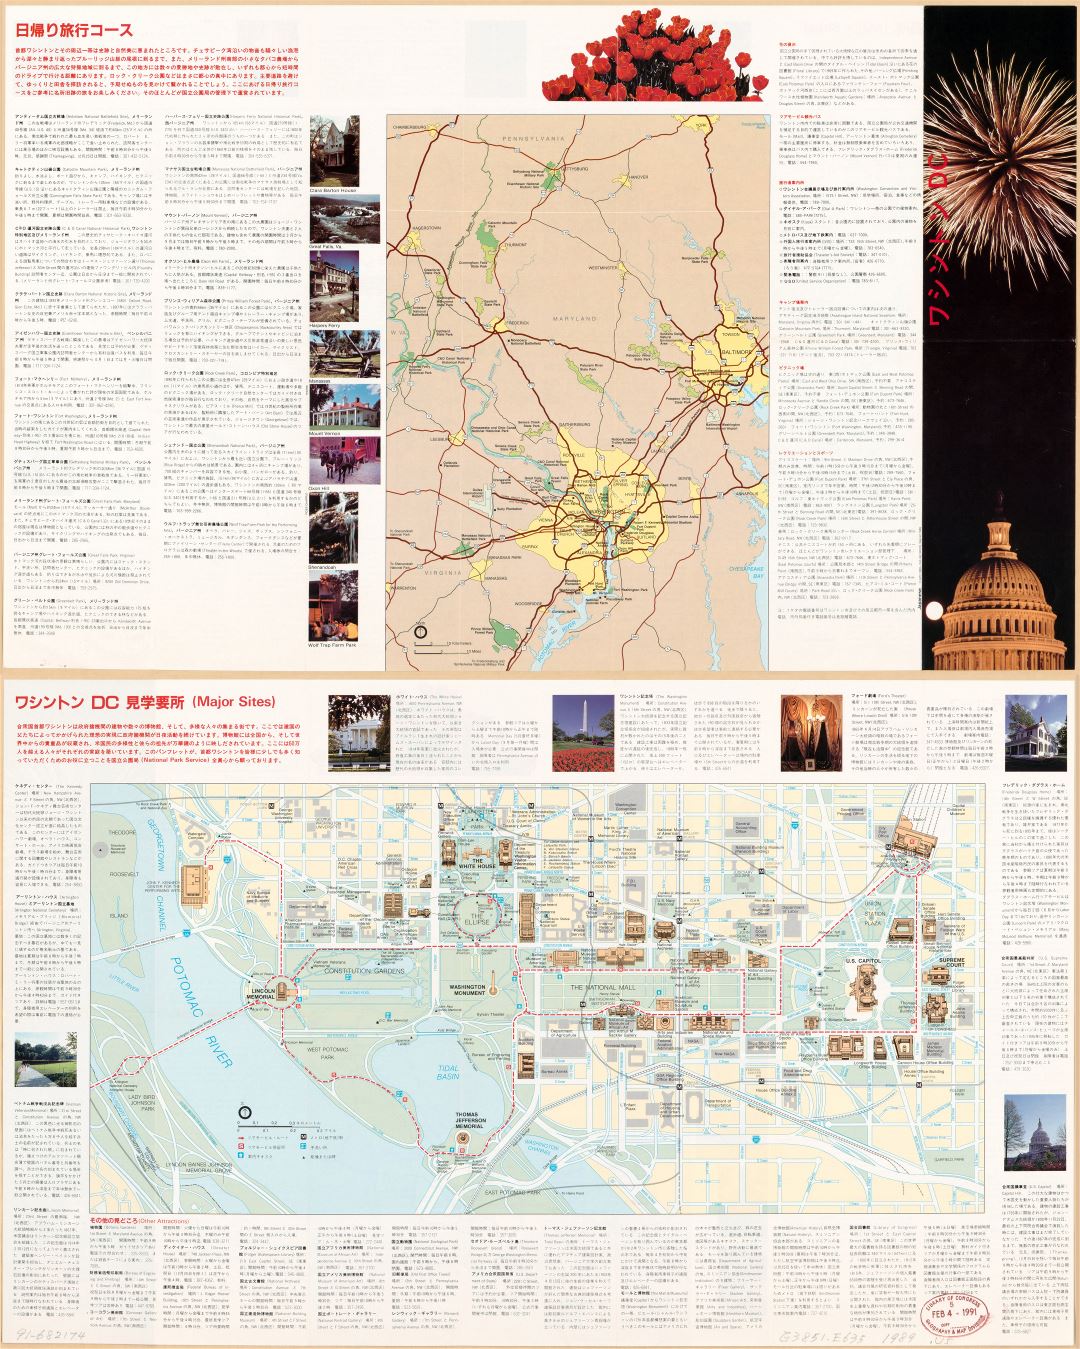 Крупномасштабная детальная туристическая карта Вашингтона, округ Колумбия на китайском языке - 1989